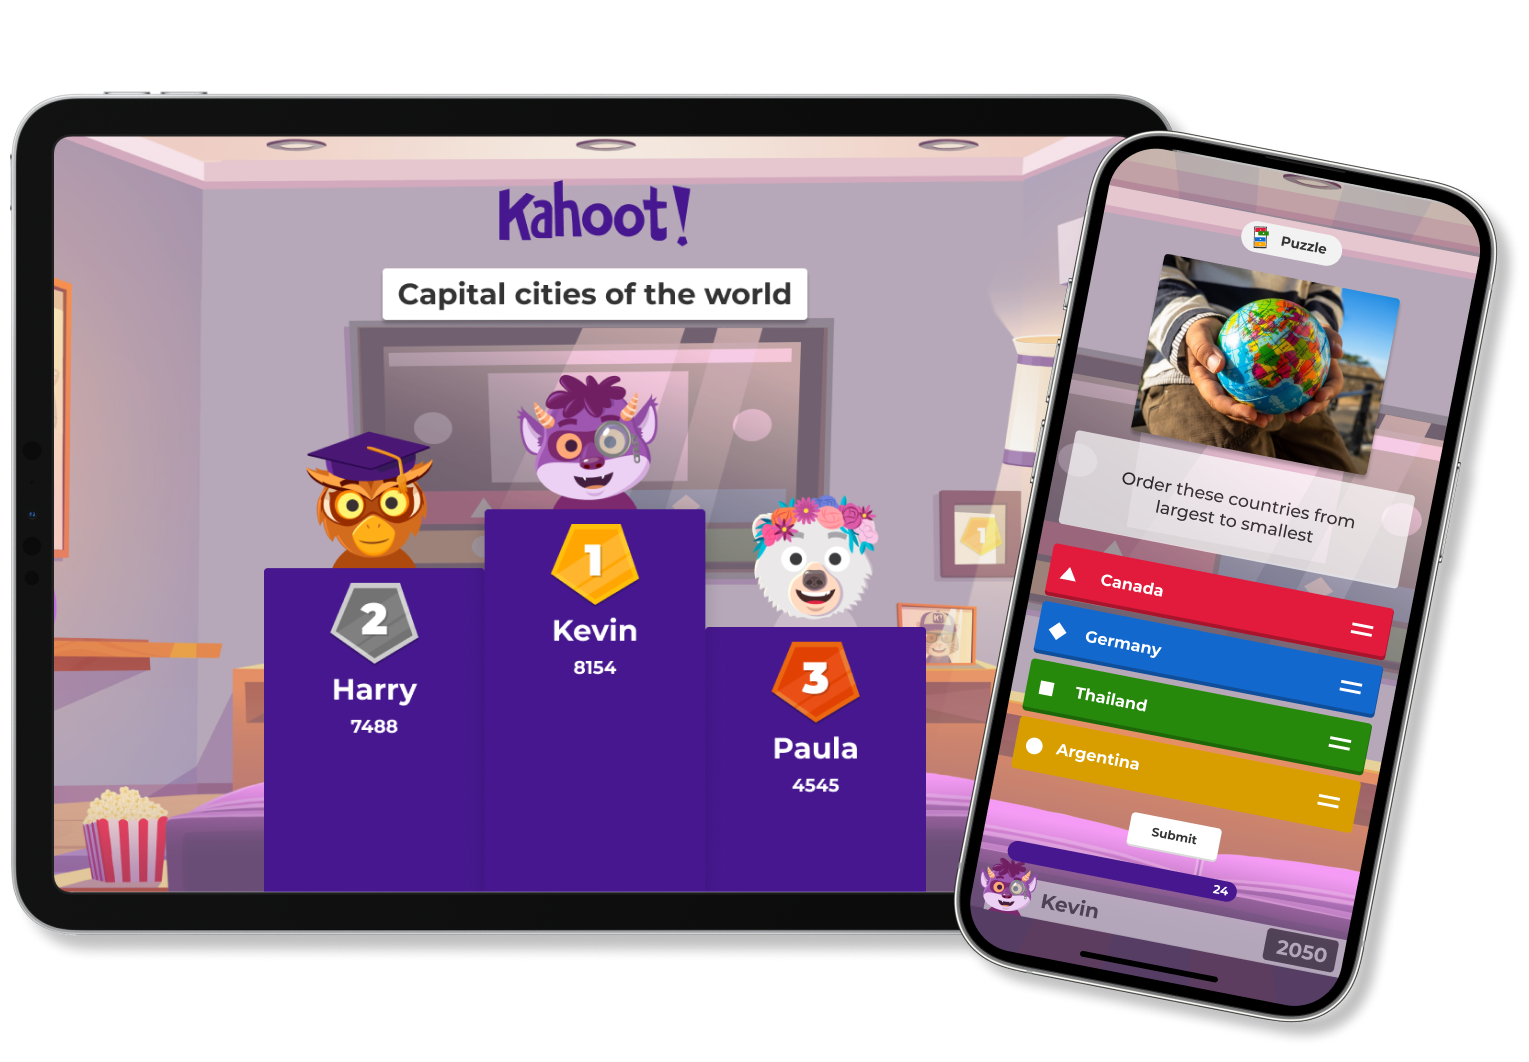 kahoot.com